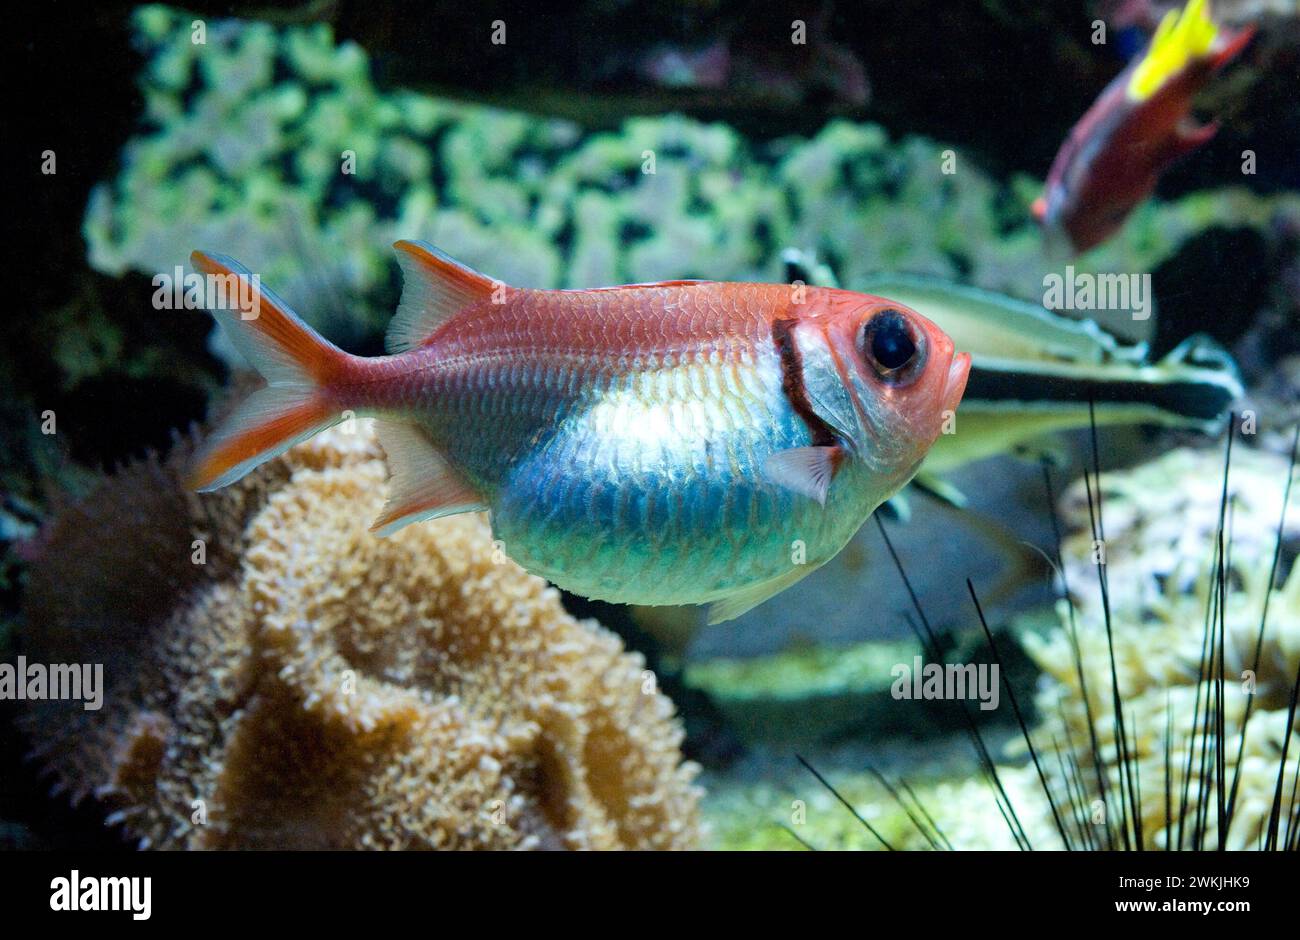 Der Schwarzbarbarbarbarbarbarsch (Myripristis jacobus) ist ein im westlichen Atlantik heimischer Meeresfisch. Stockfoto